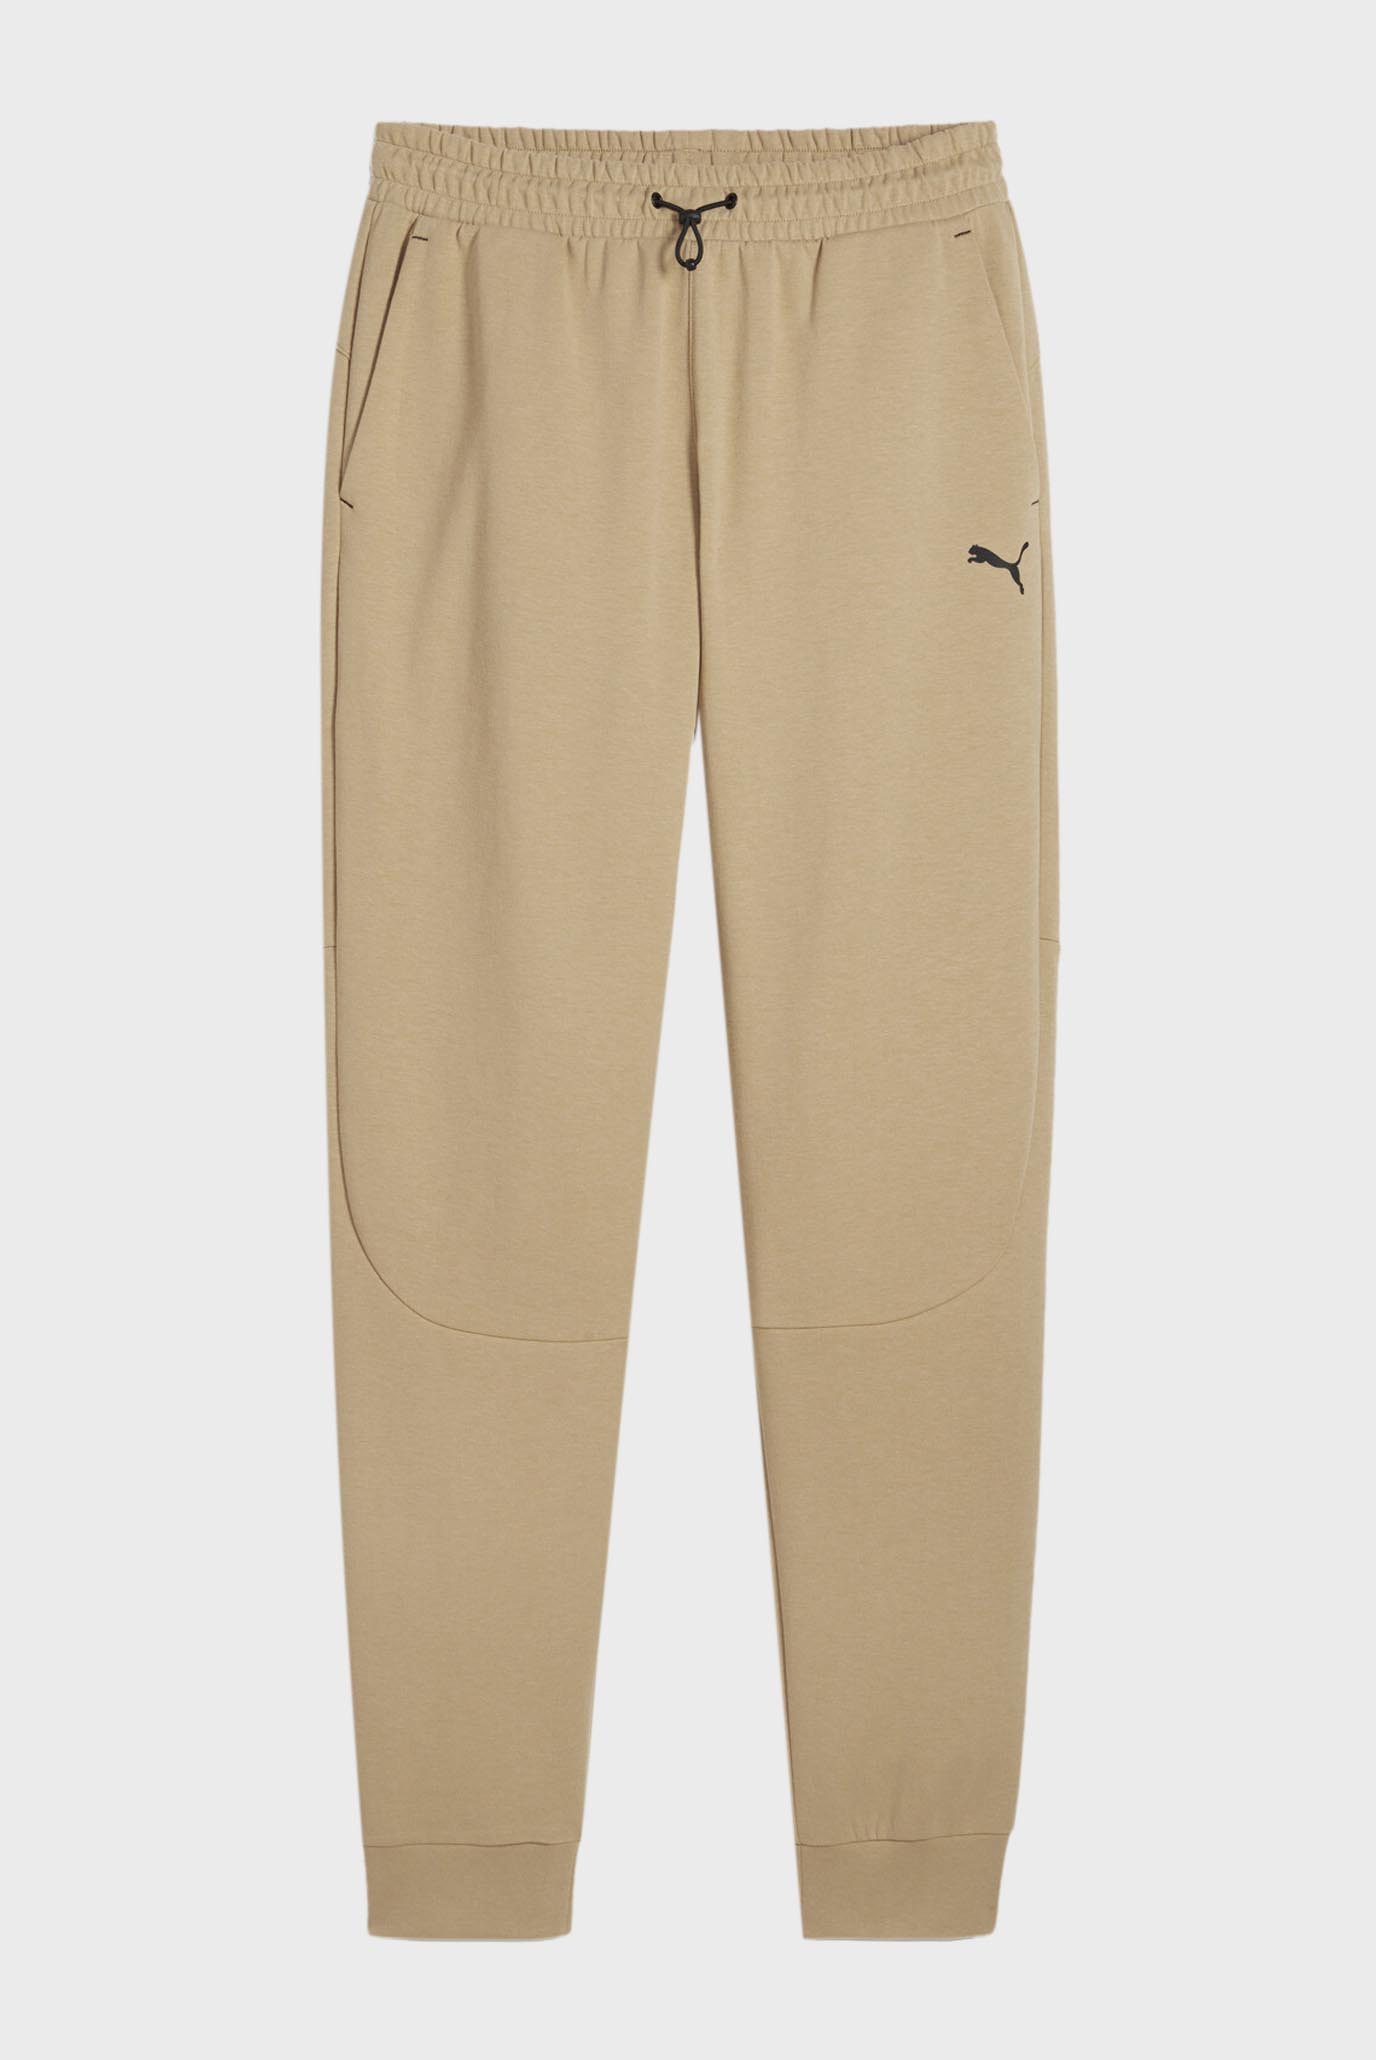 Мужские бежевые спортивные брюки RAD/CAL Men's Sweatpants 1